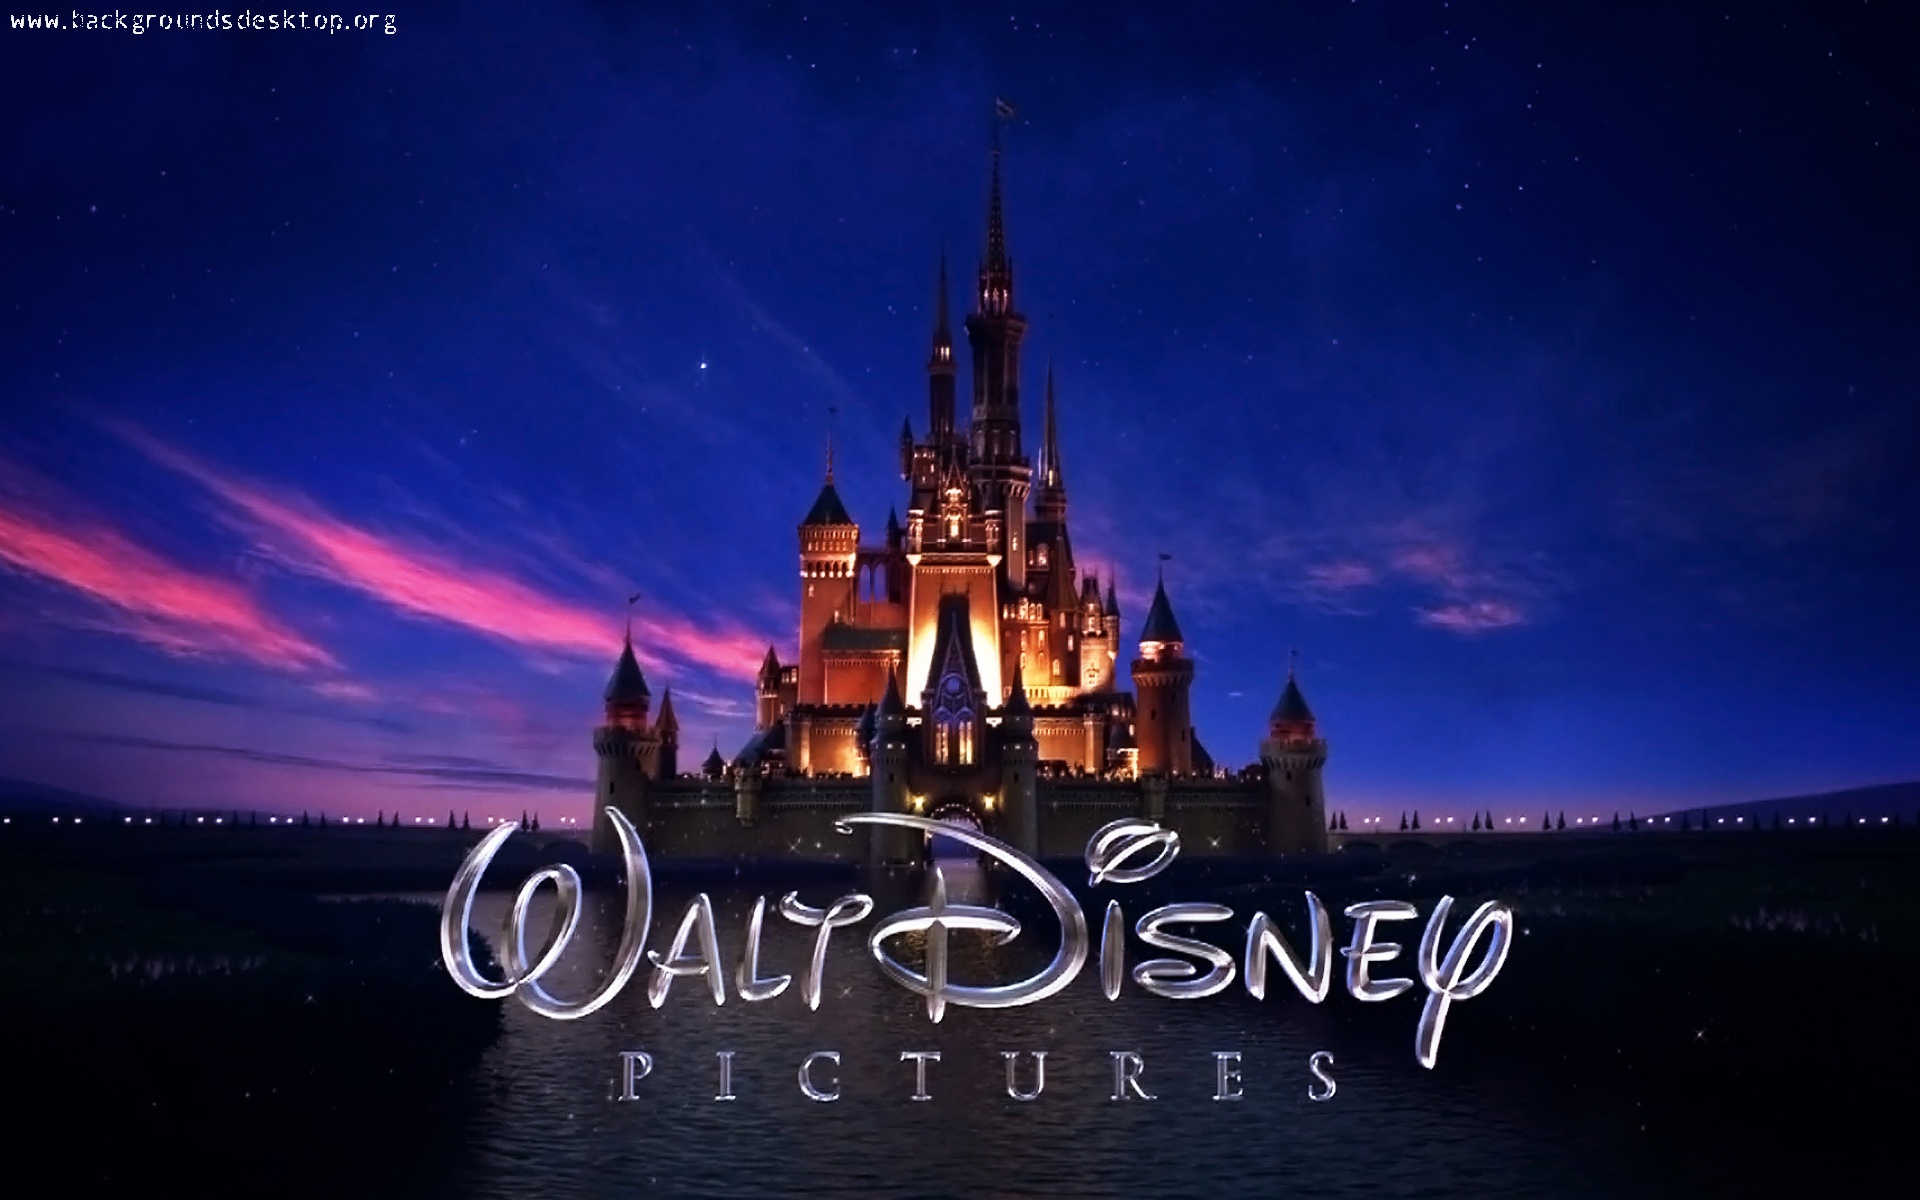 Disney Castle Wallpaper